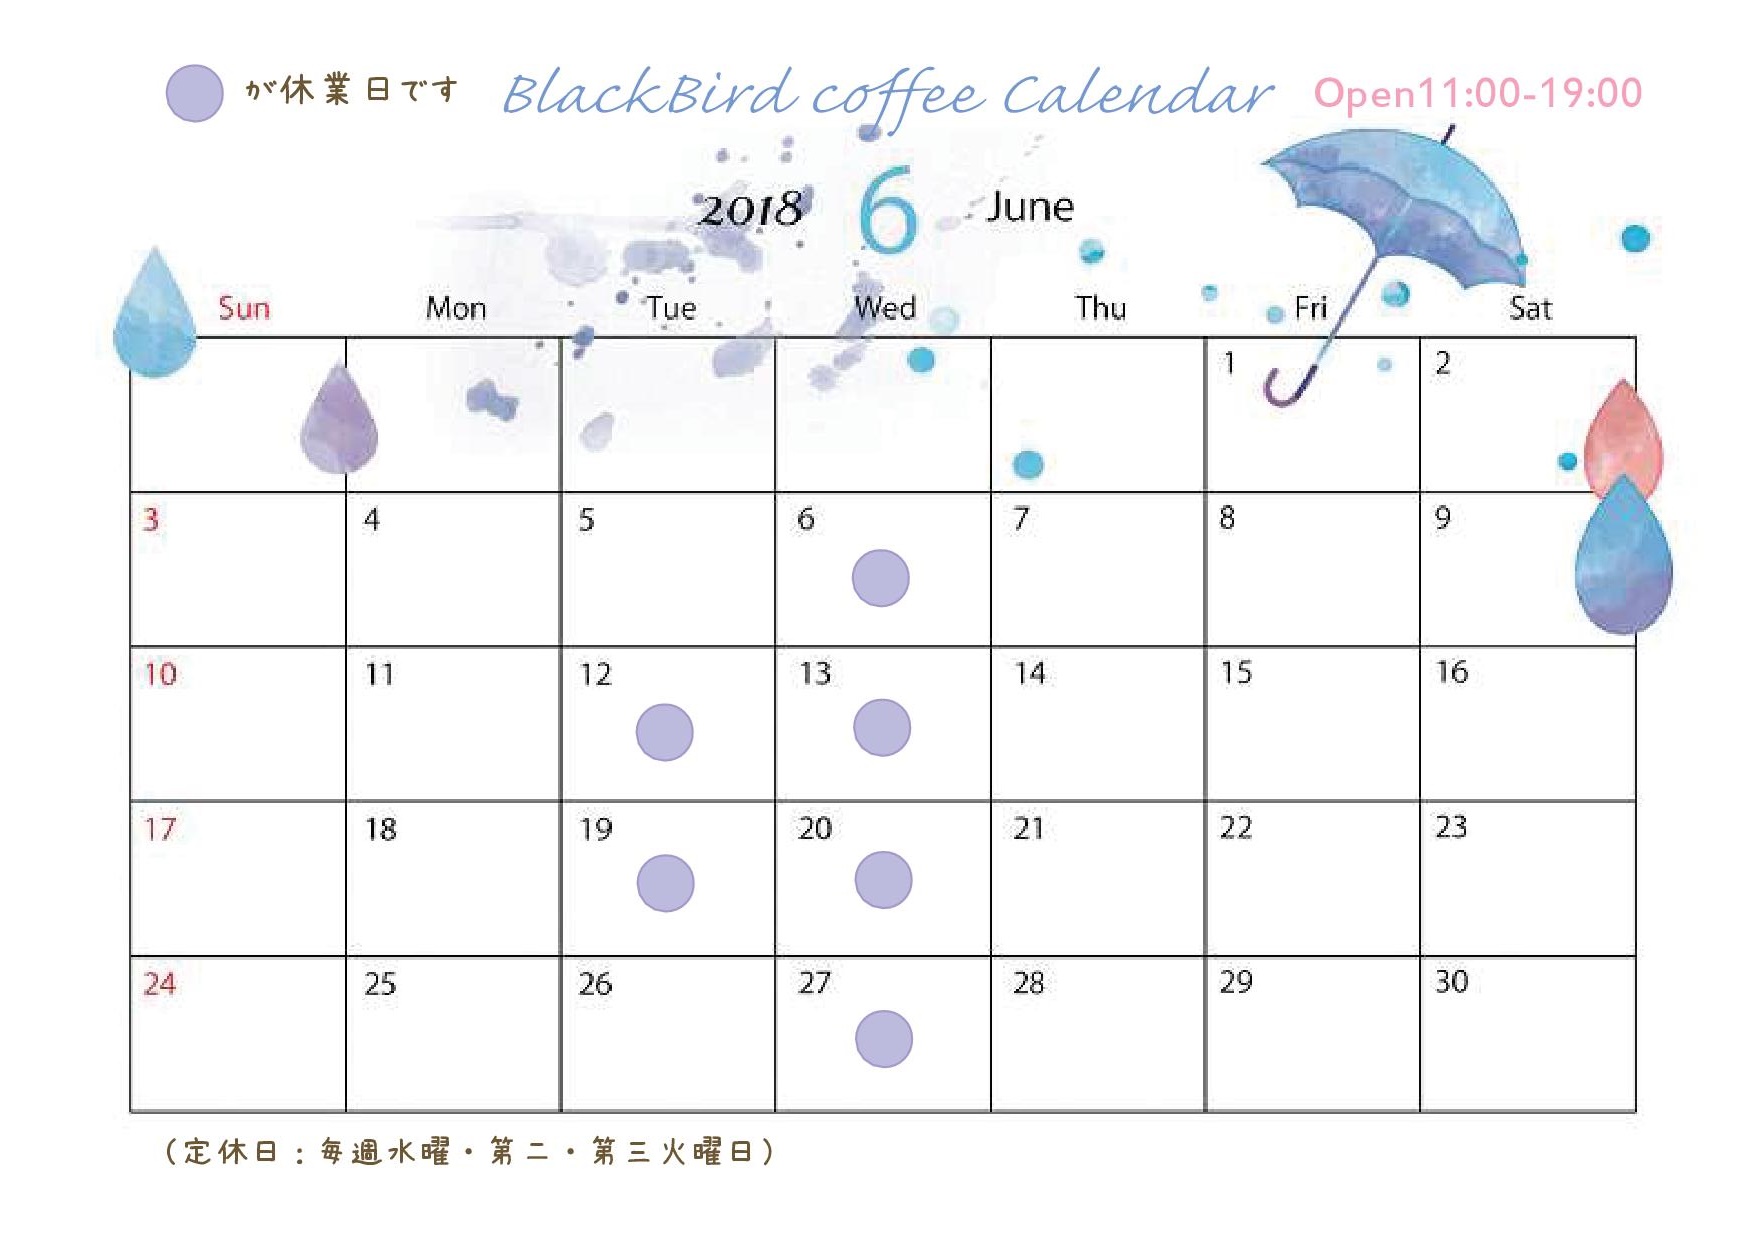 5月 18 Blackbird Coffee